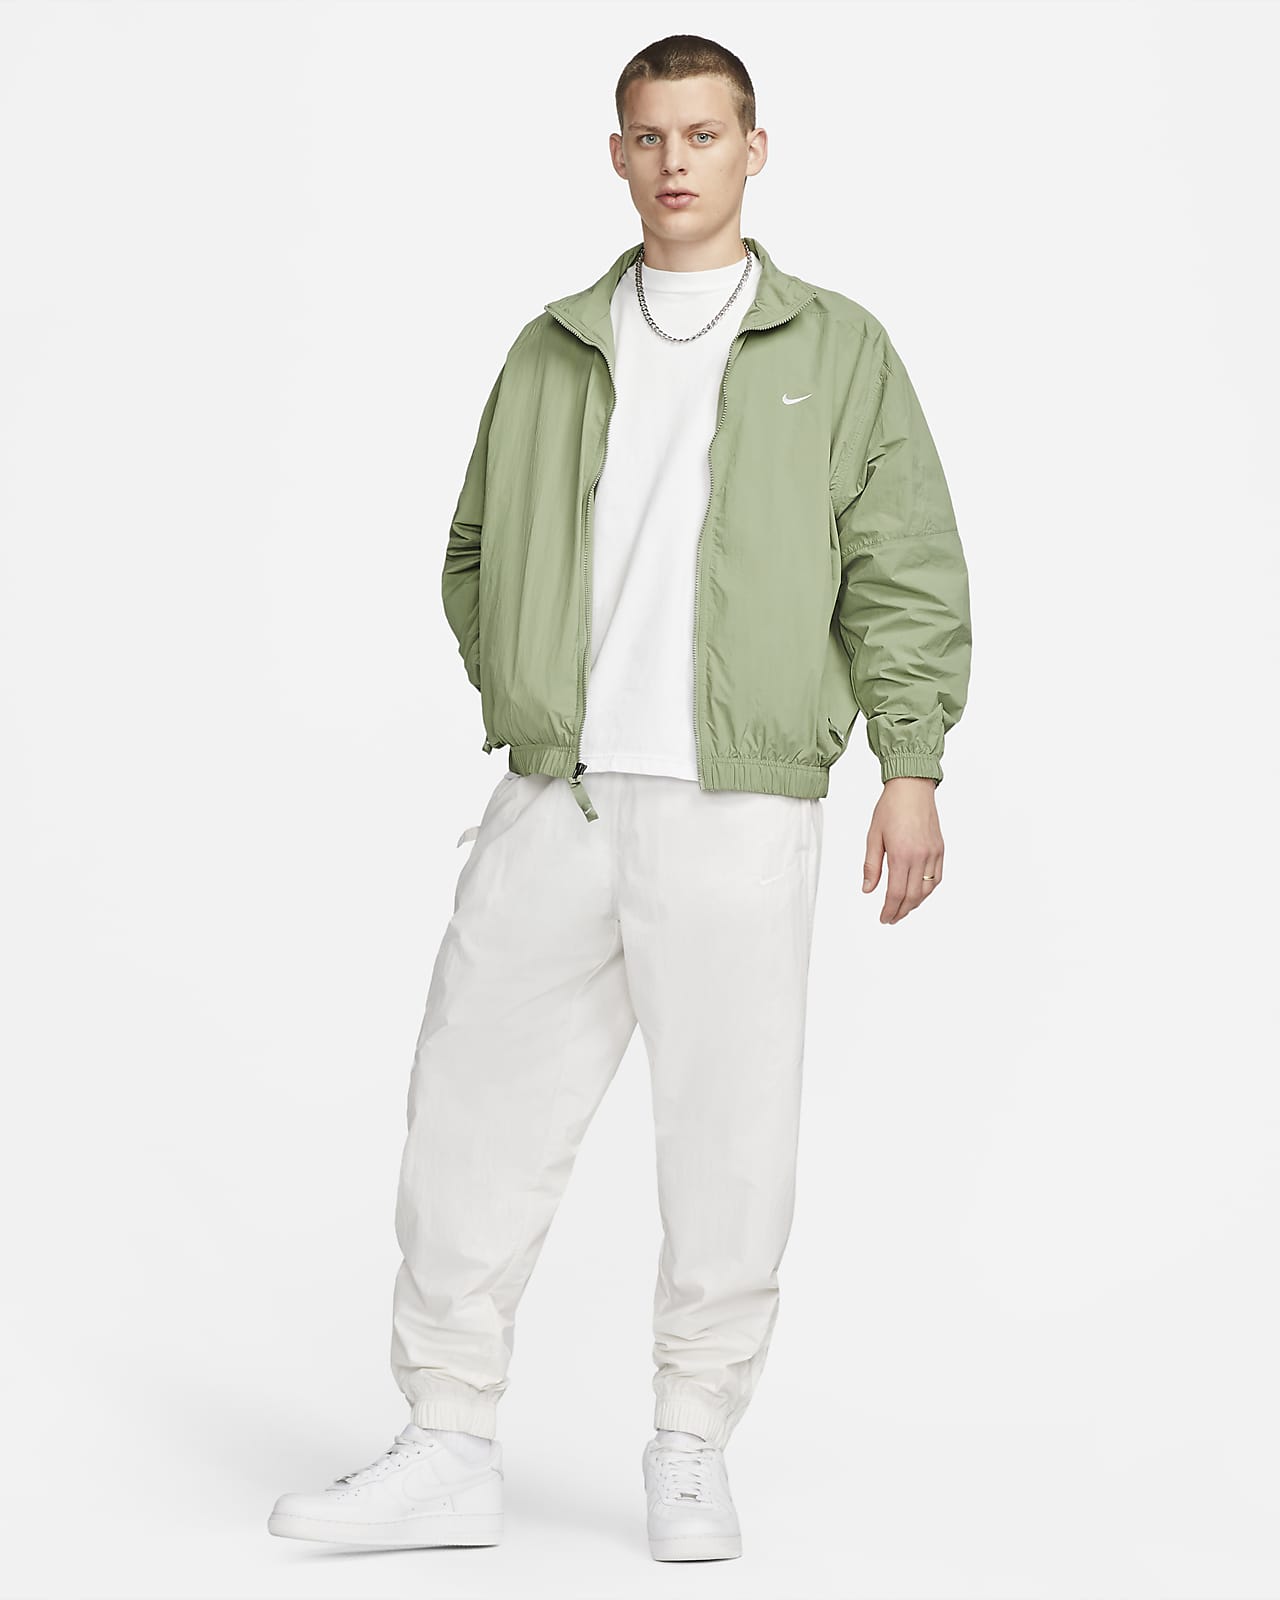 Fila | Jackets & Coats | Fila Mens Track Jacket And Pants Windbreaker Suit  Navy White Red Size Medium | Poshmark